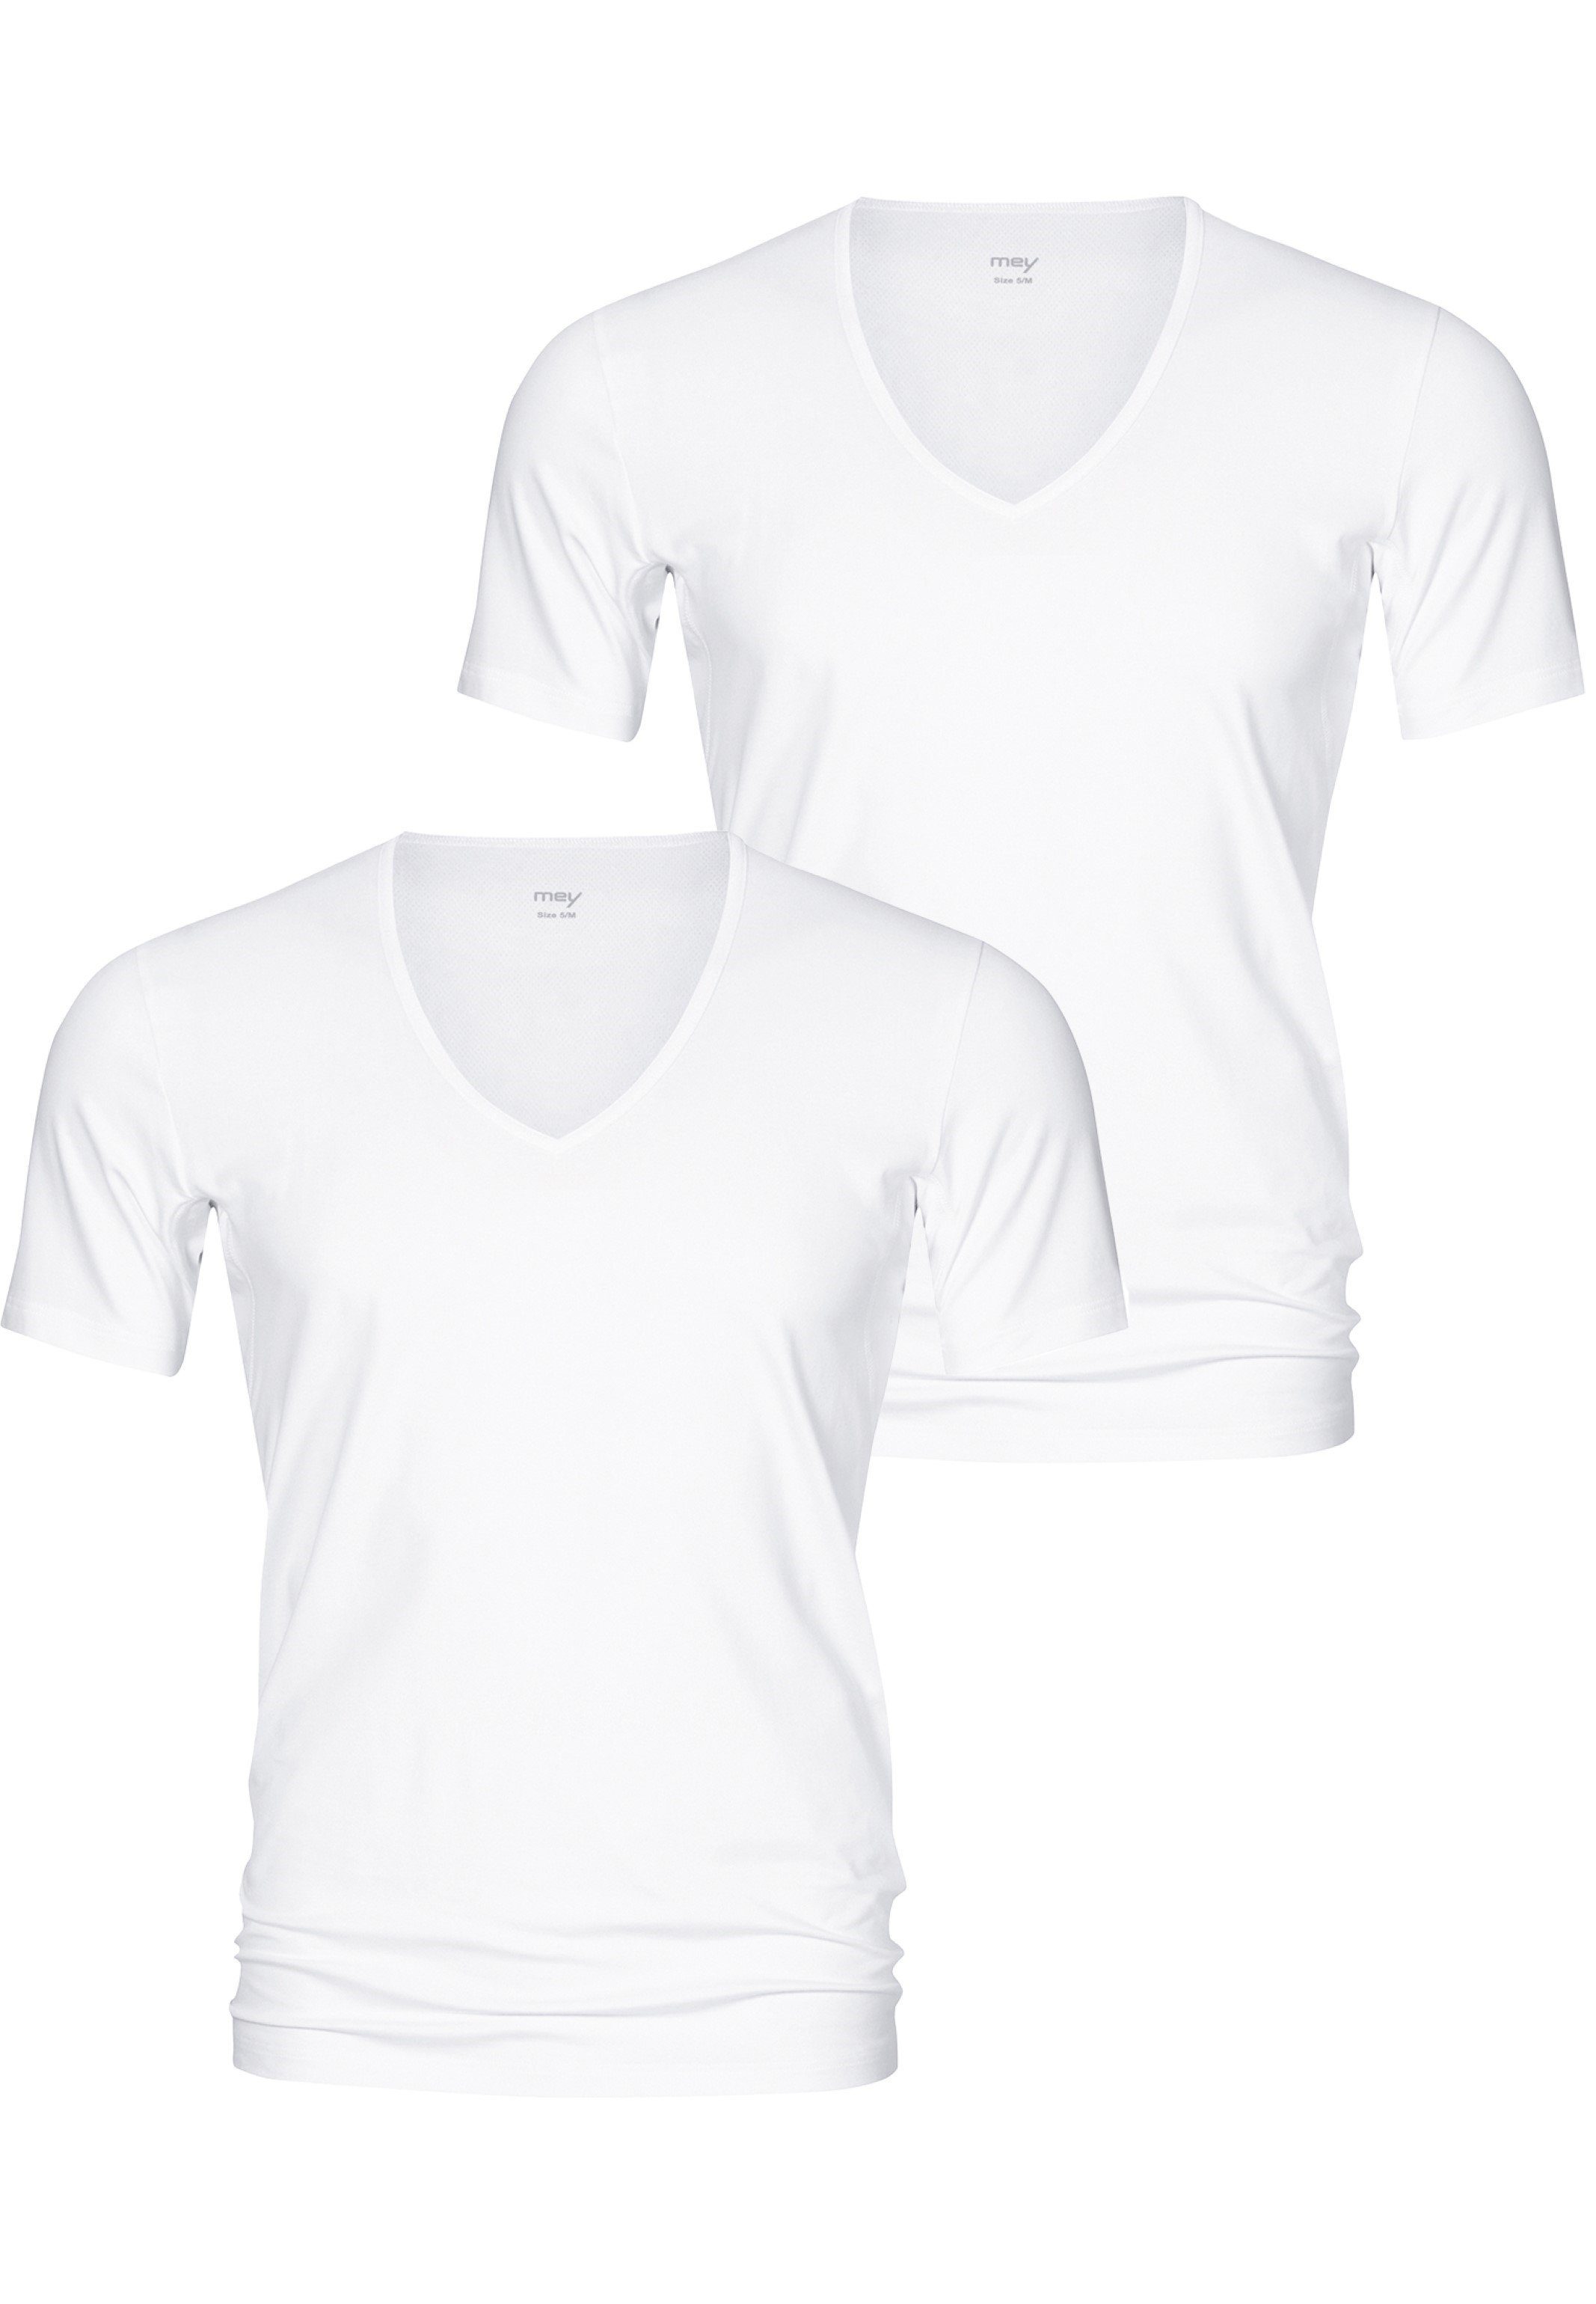 Mey Unterhemd 2er Pack Dry Cotton (Spar-Set, 2-St) Unterhemd / Shirt Kurzarm - Baumwolle - Thermoregulierend Weiß